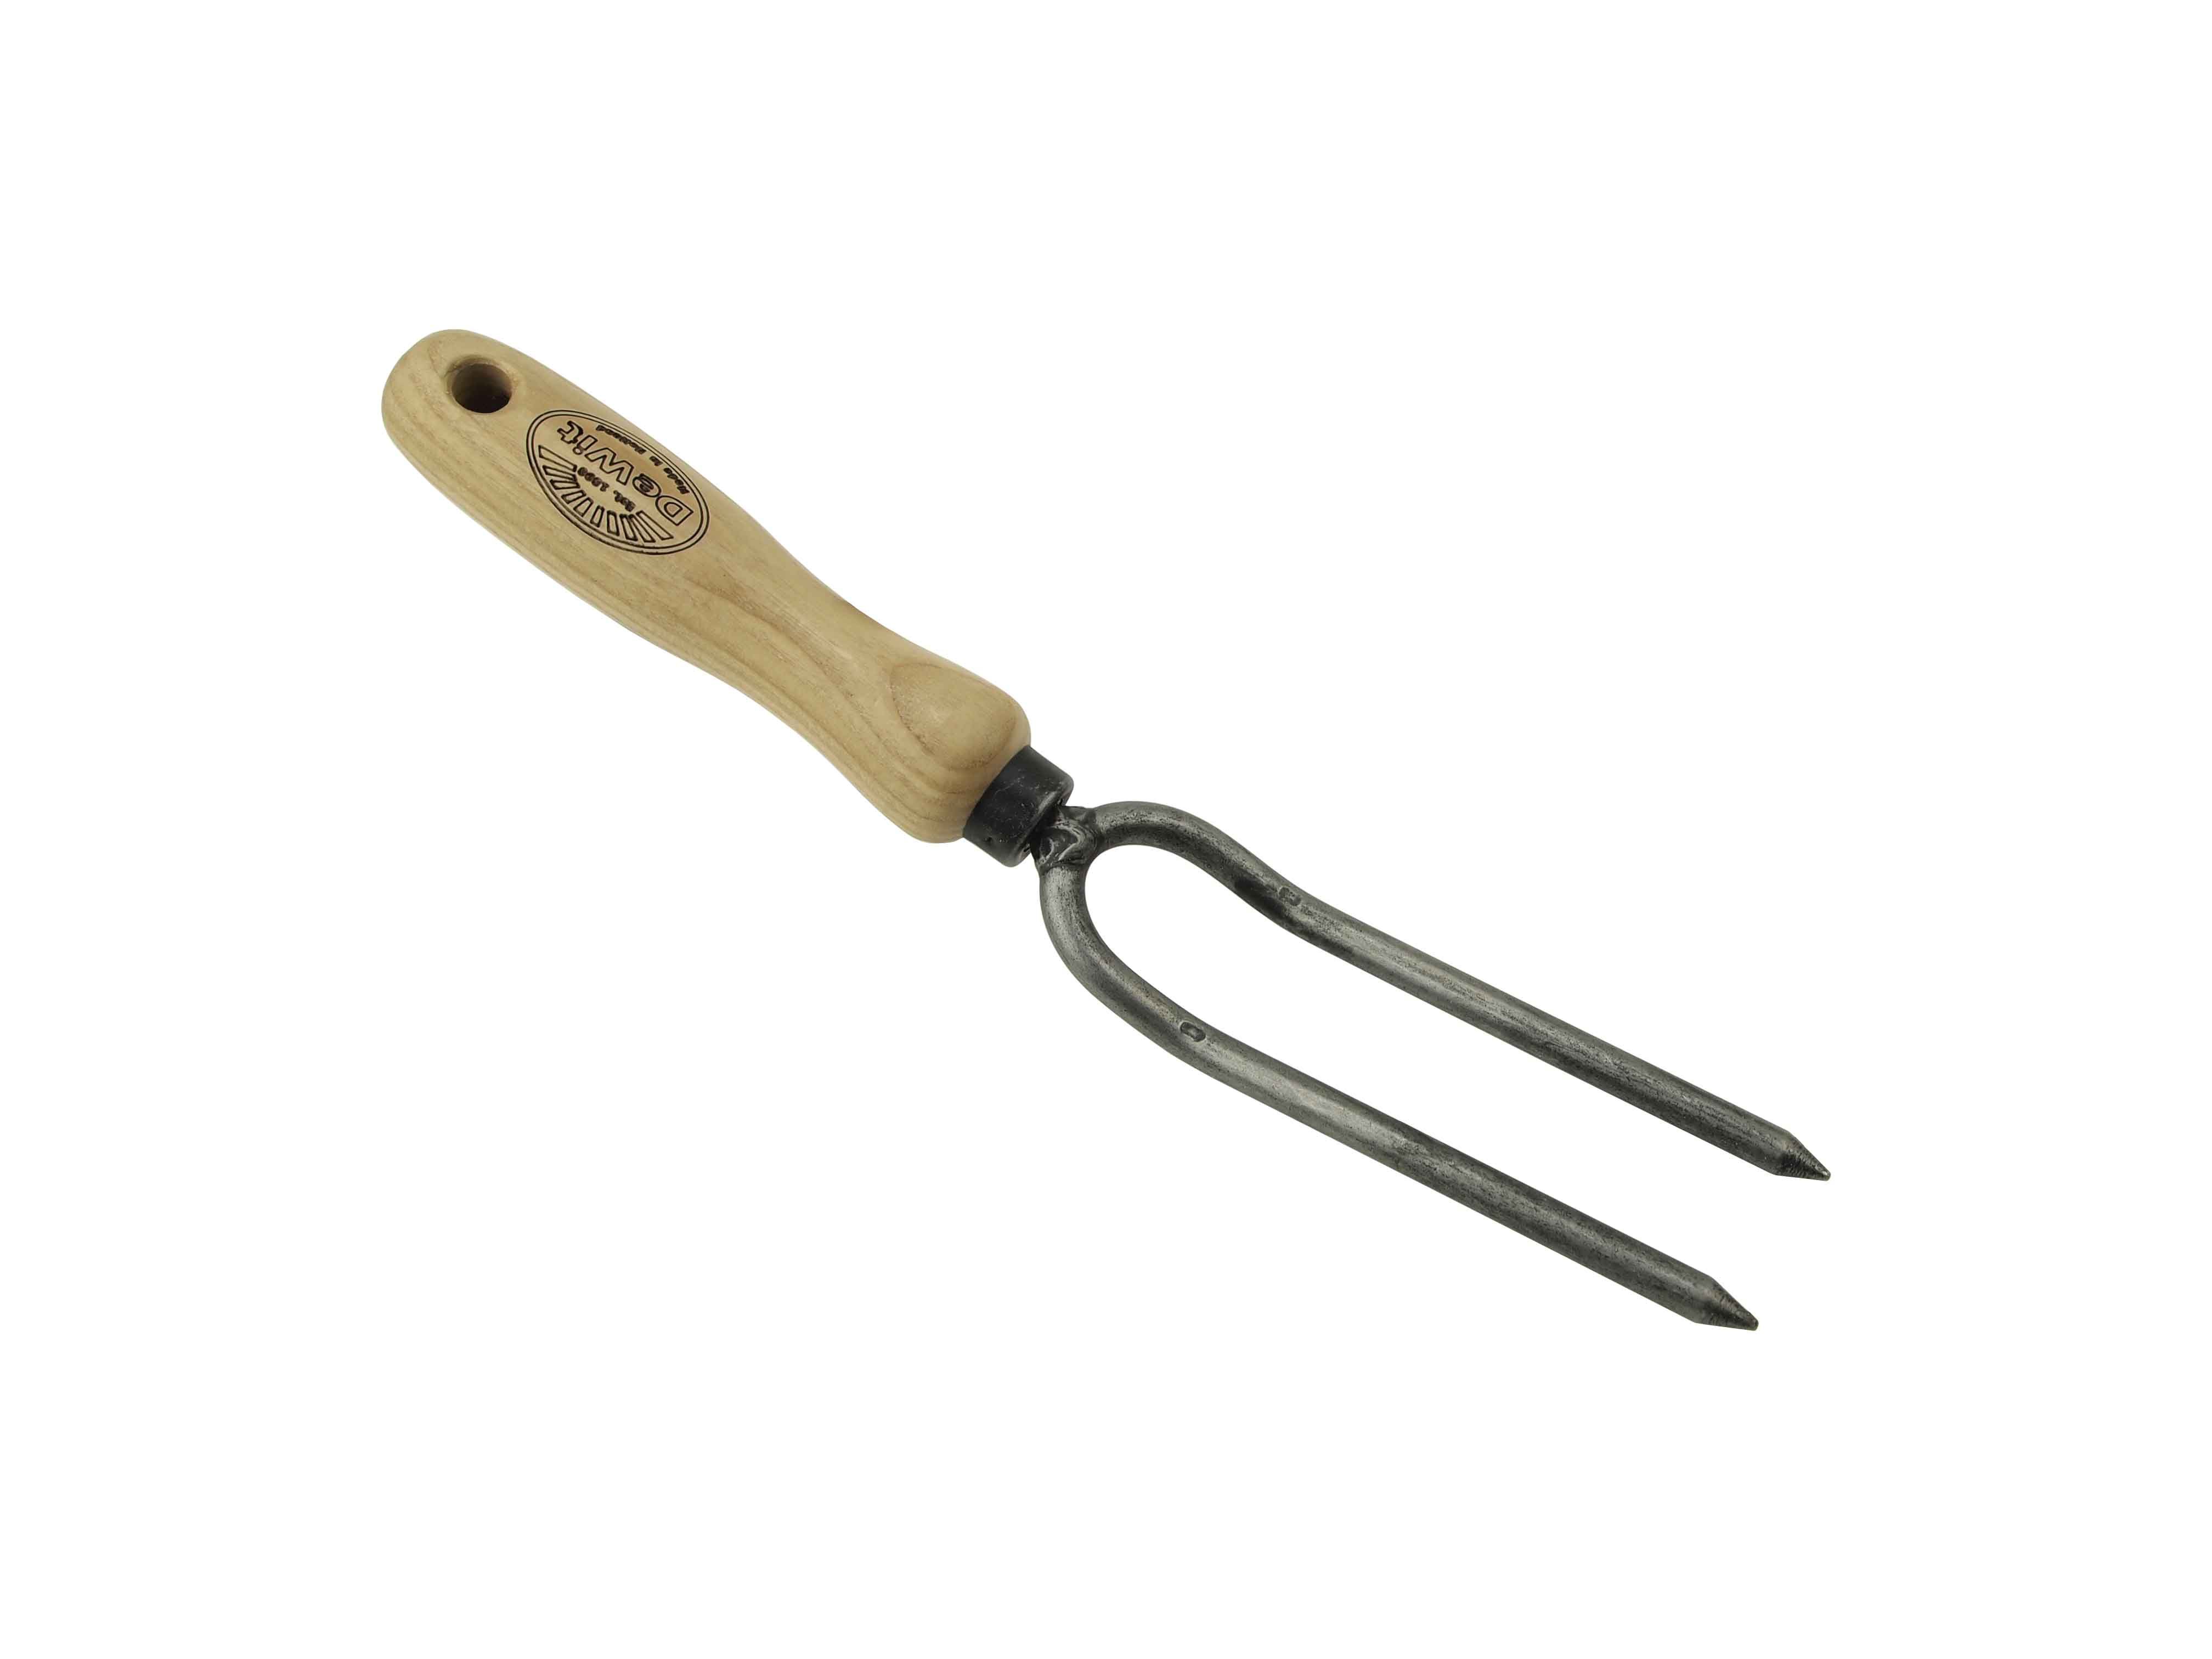 Weeding fork 2 prong ash handle 140mm | DeWit